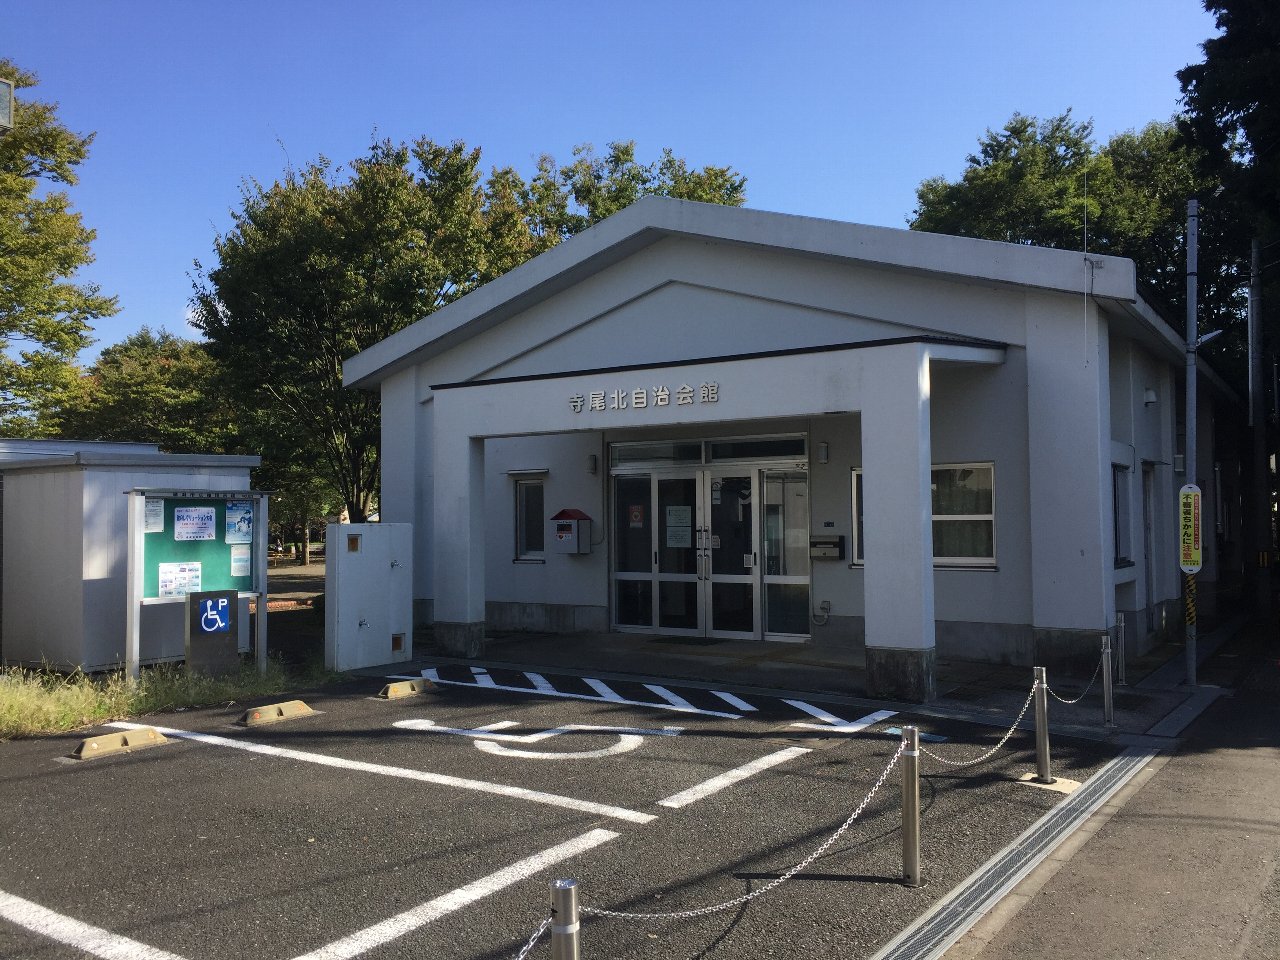 入り口前に駐車場がある寺尾北自治会館を正面から写した写真